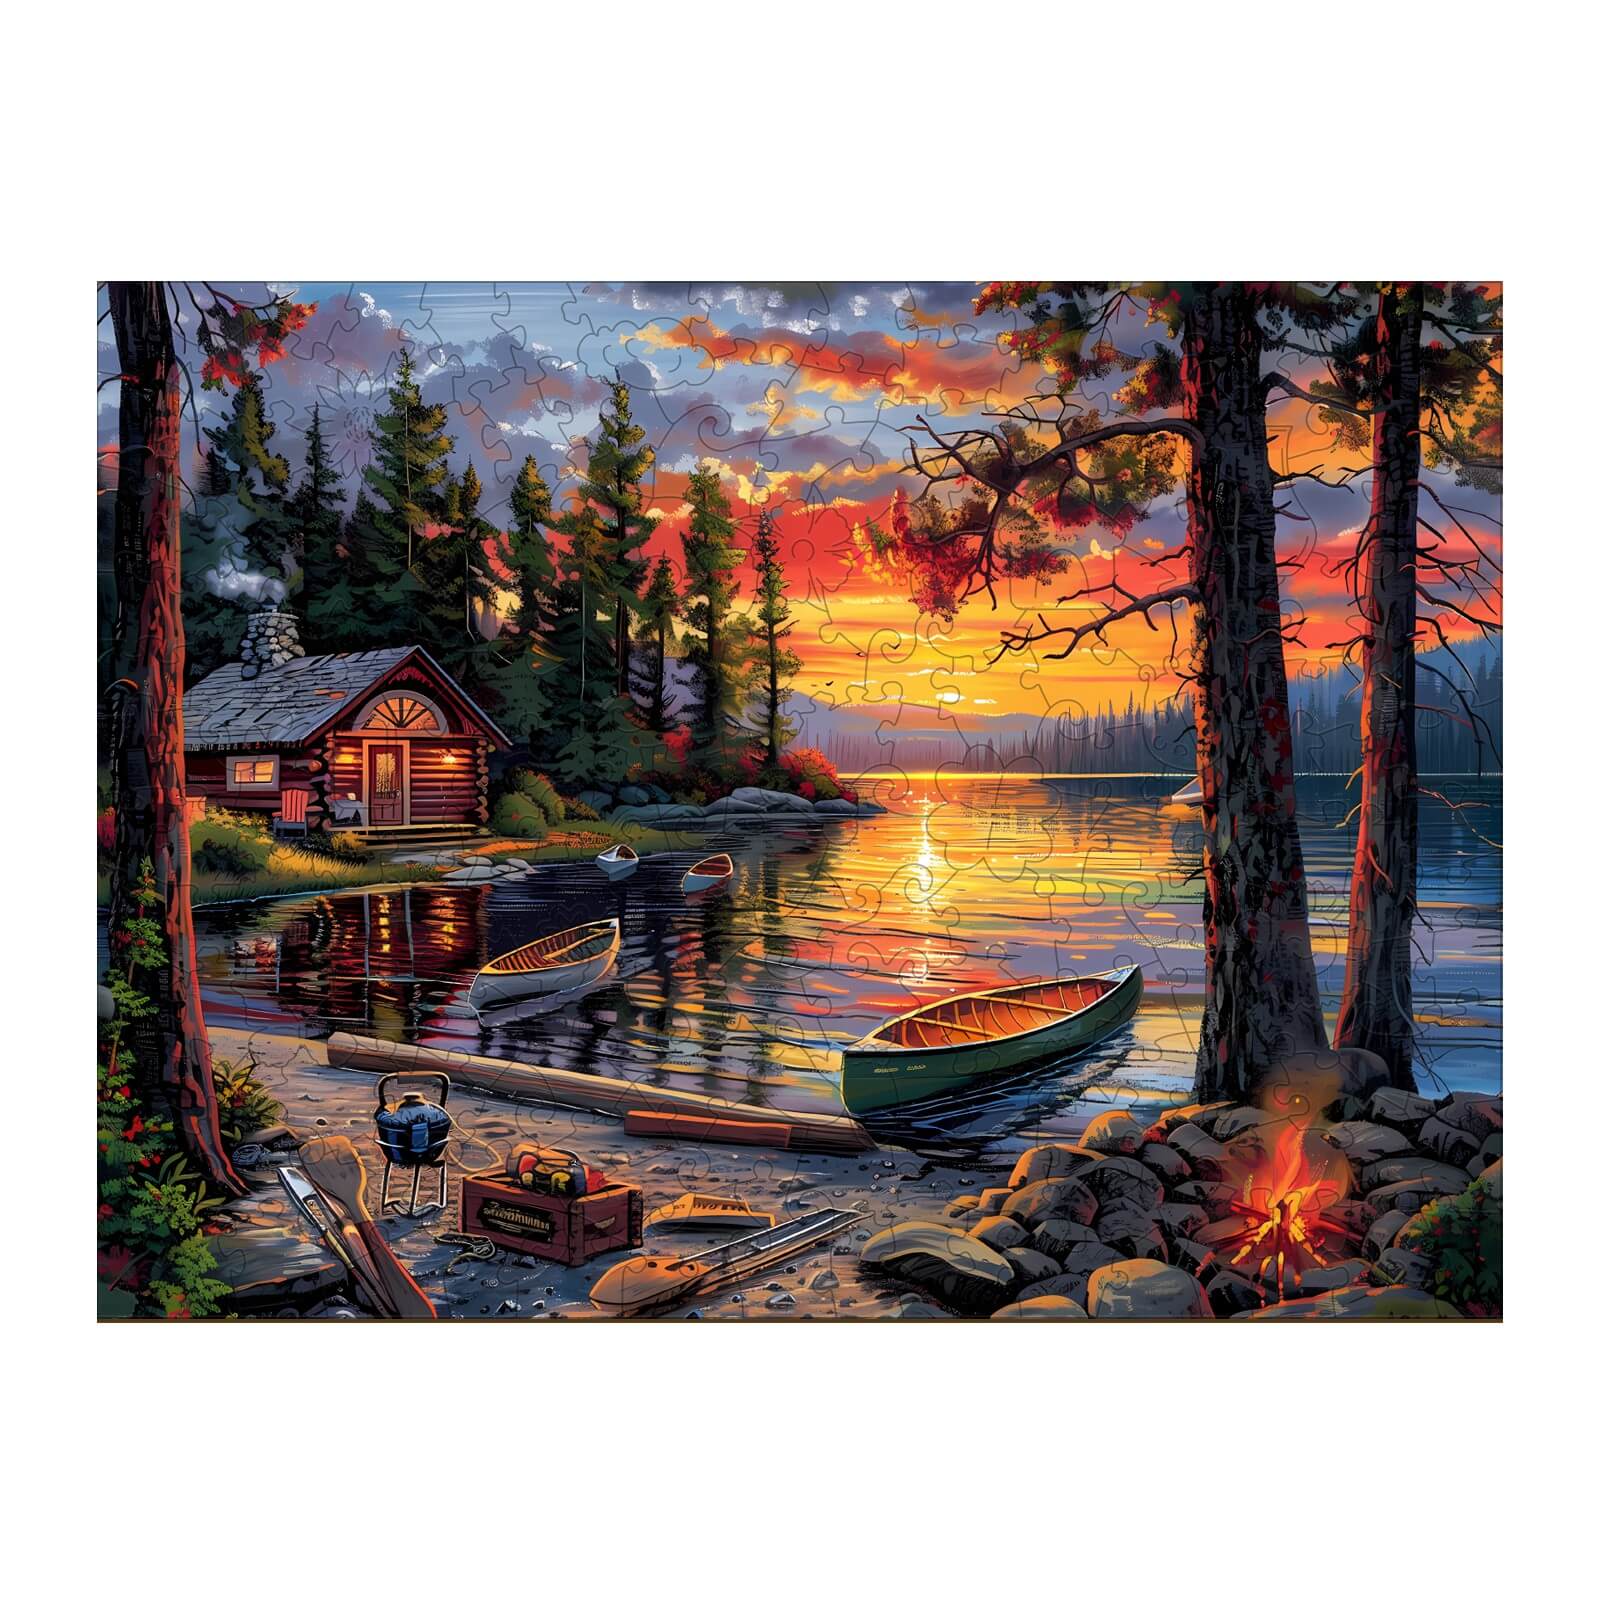 Canoe Lake-1 Wooden Jigsaw Puzzle